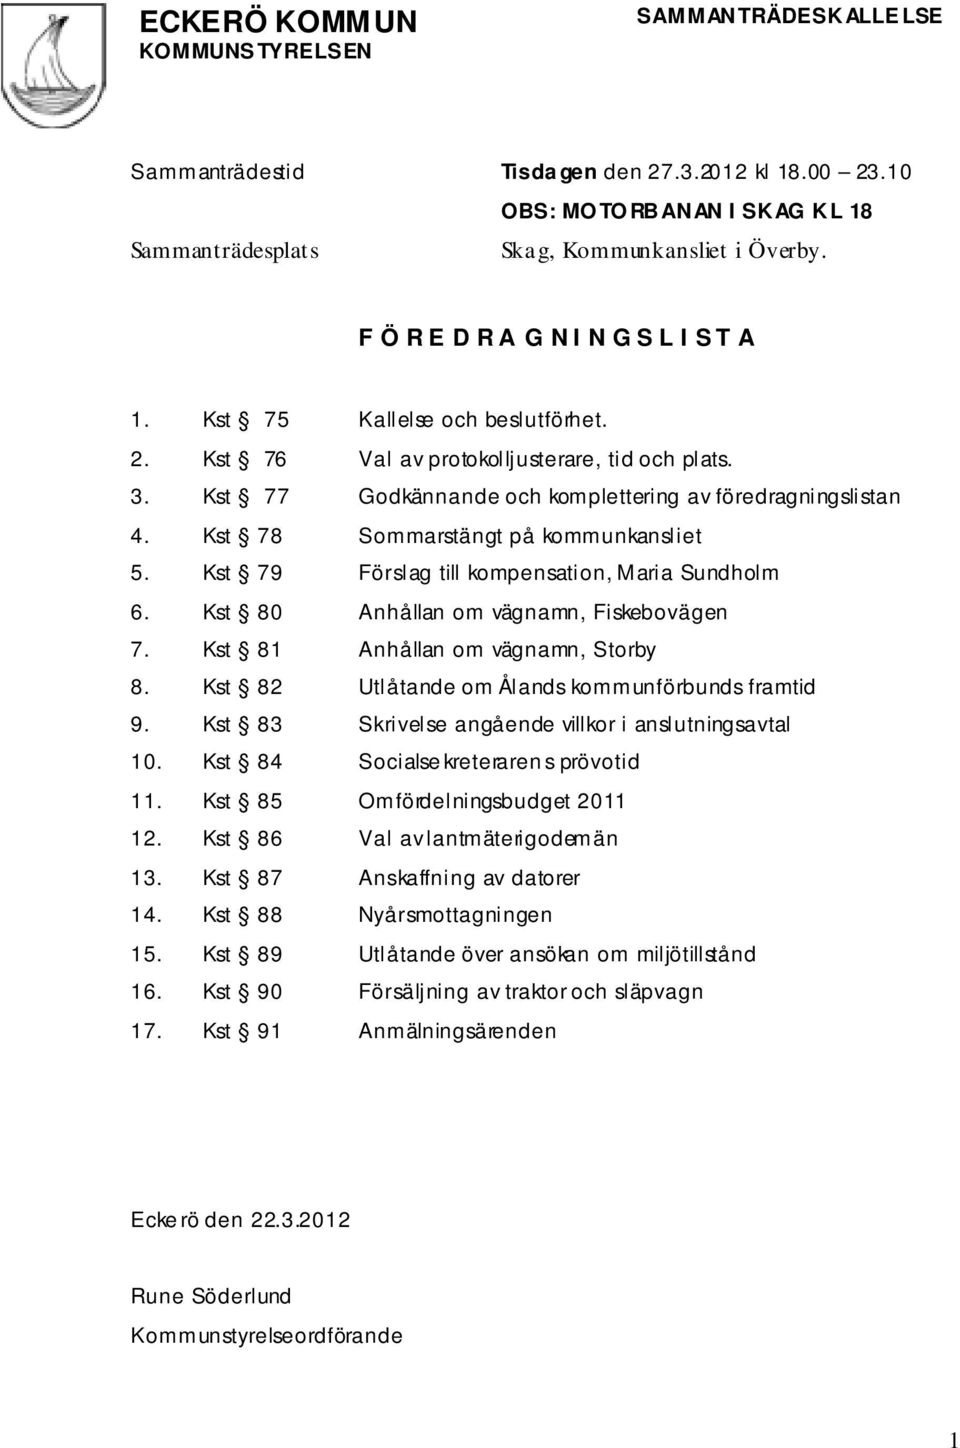 Kst 78 Sommarstängt på kommunkansliet 5. Kst 79 Förslag till kompensation, Maria Sundholm 6. Kst 80 Anhållan om vägnamn, Fiskebovägen 7. Kst 81 Anhållan om vägnamn, Storby 8.